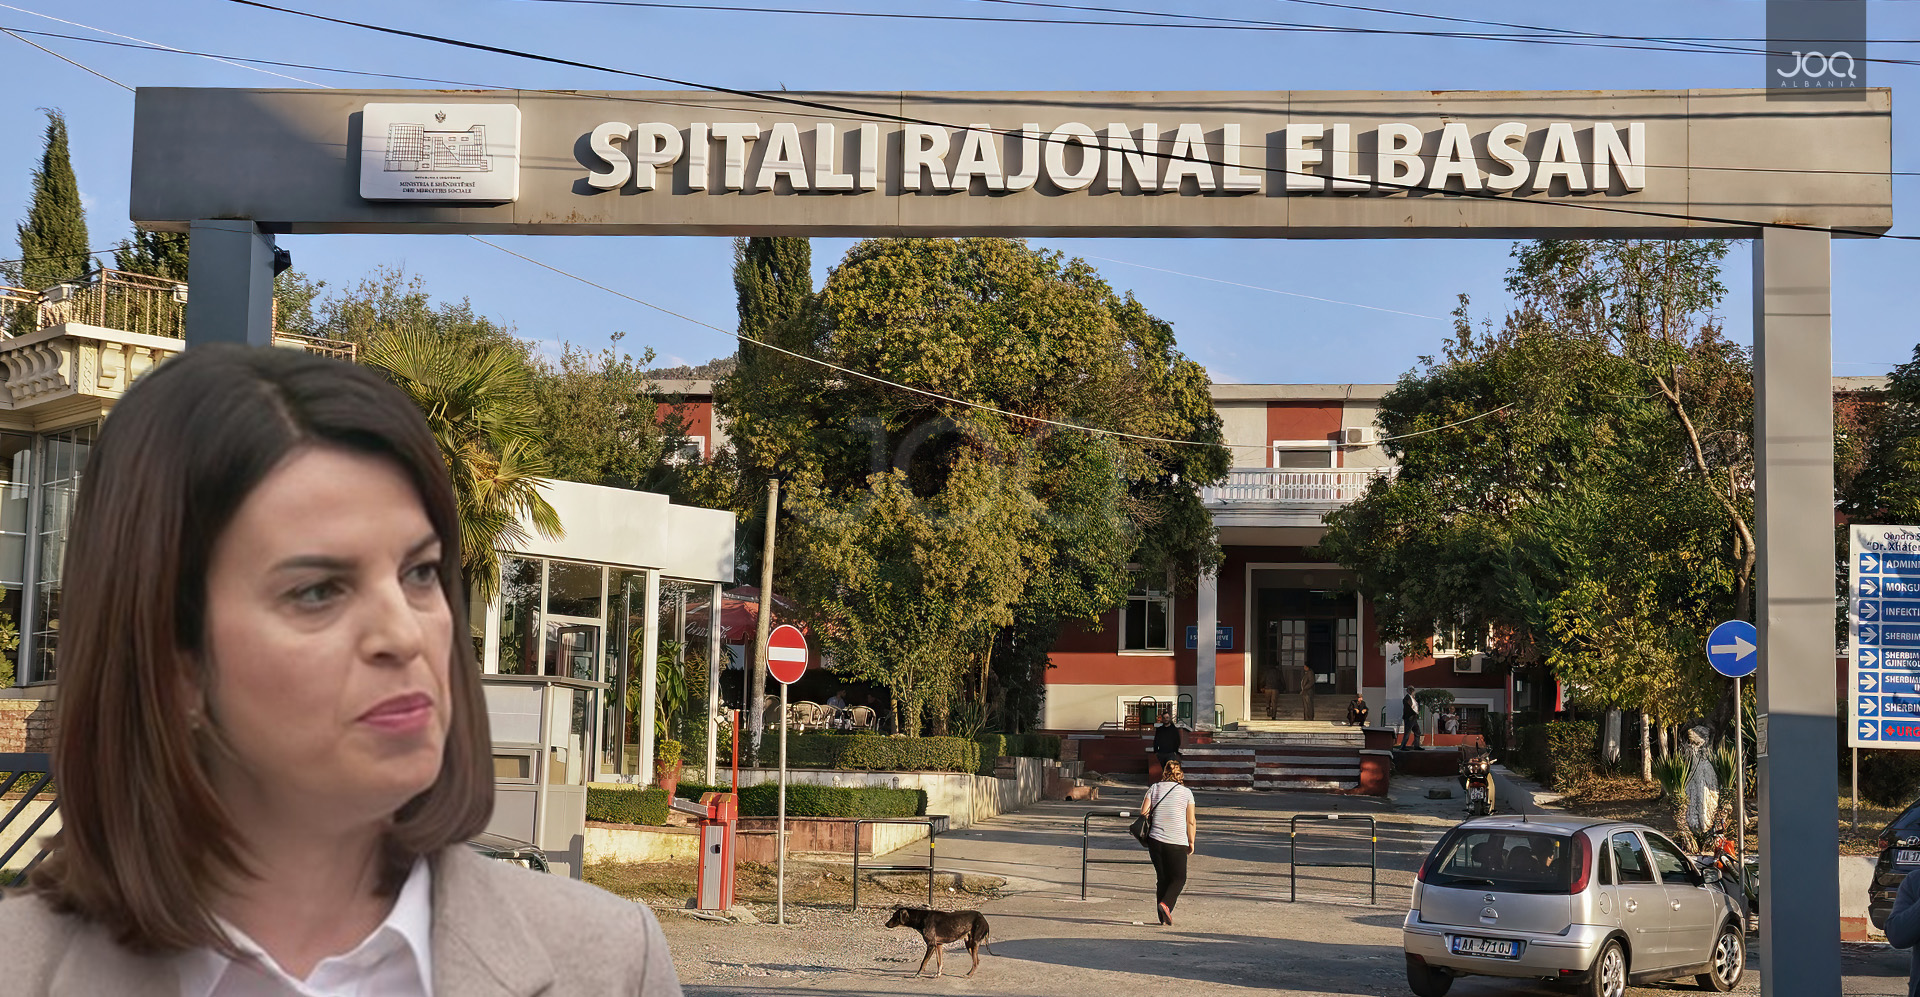 200 MLN pa garë për rezonancën, Spitali Elbasan “i luan fenë” tenderit